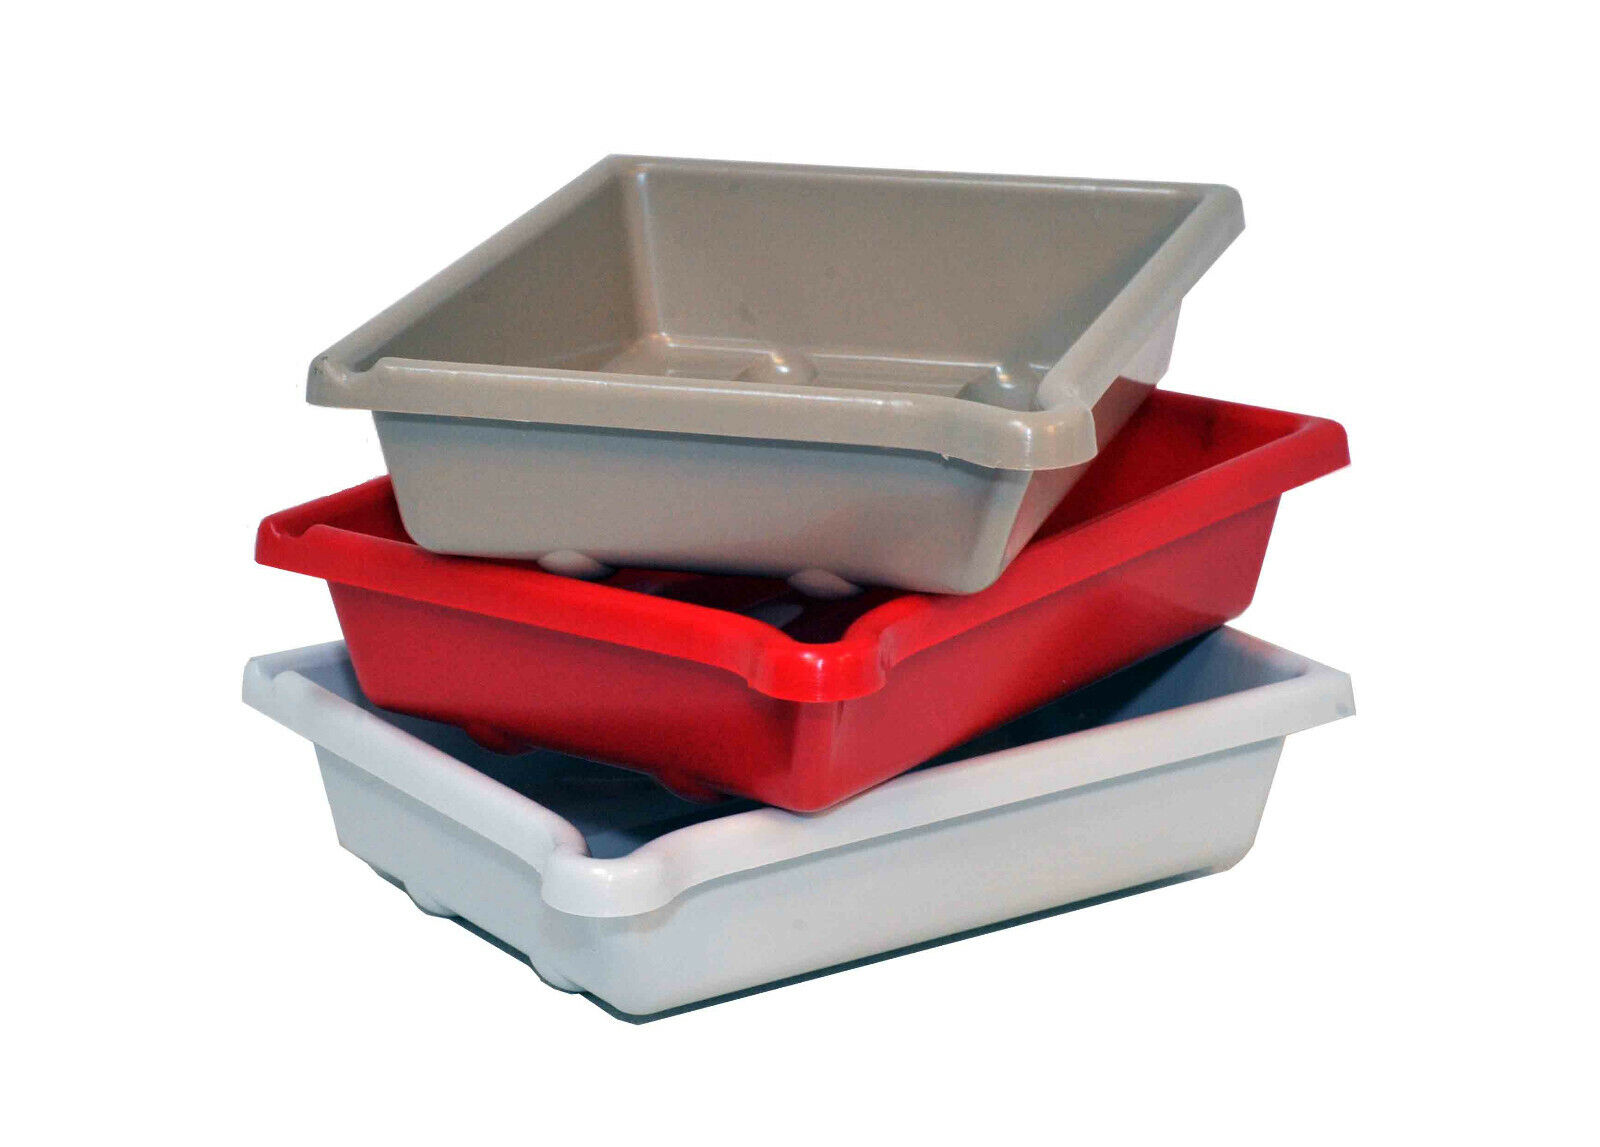 Set of 3 AP Darkroom Developing Dish 12x16" (30 x 40cm) Red/White/Beige